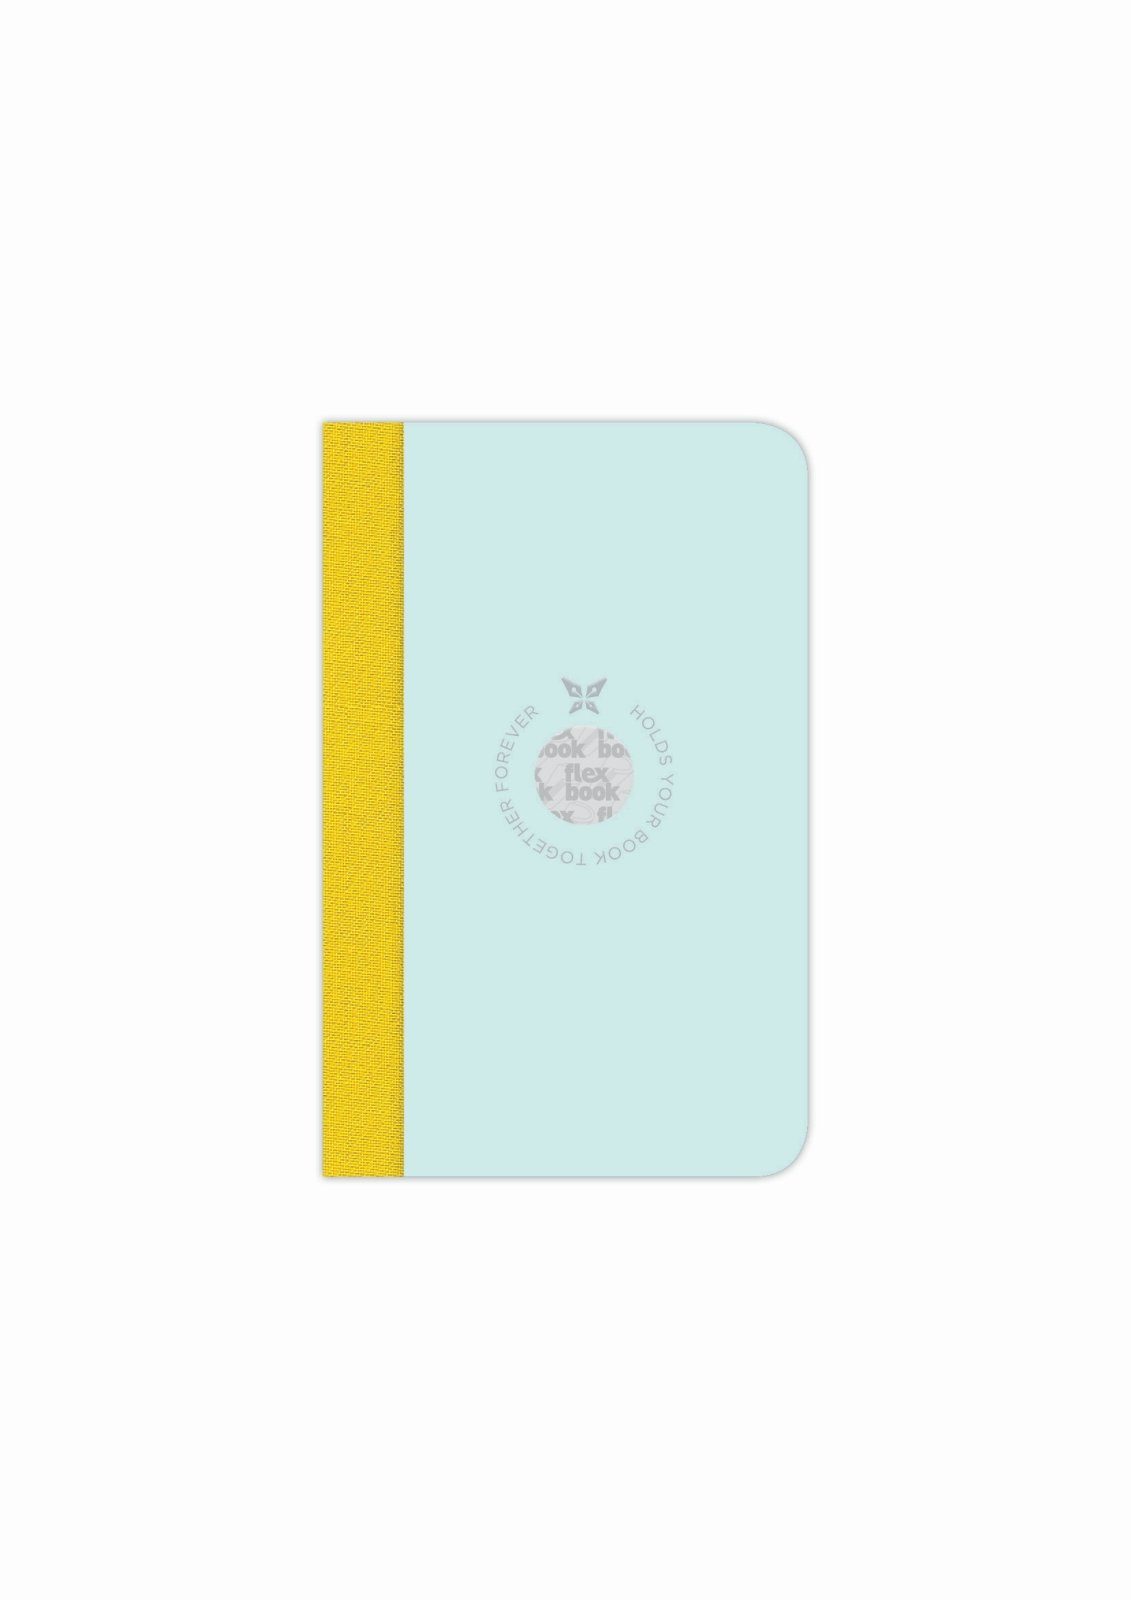 Flexbook Notizbuch Flexbook Smartbook Liniert 160 Seiten Ökopapiereinband viele Größen/Fa Hellblau-grün 9*14cm